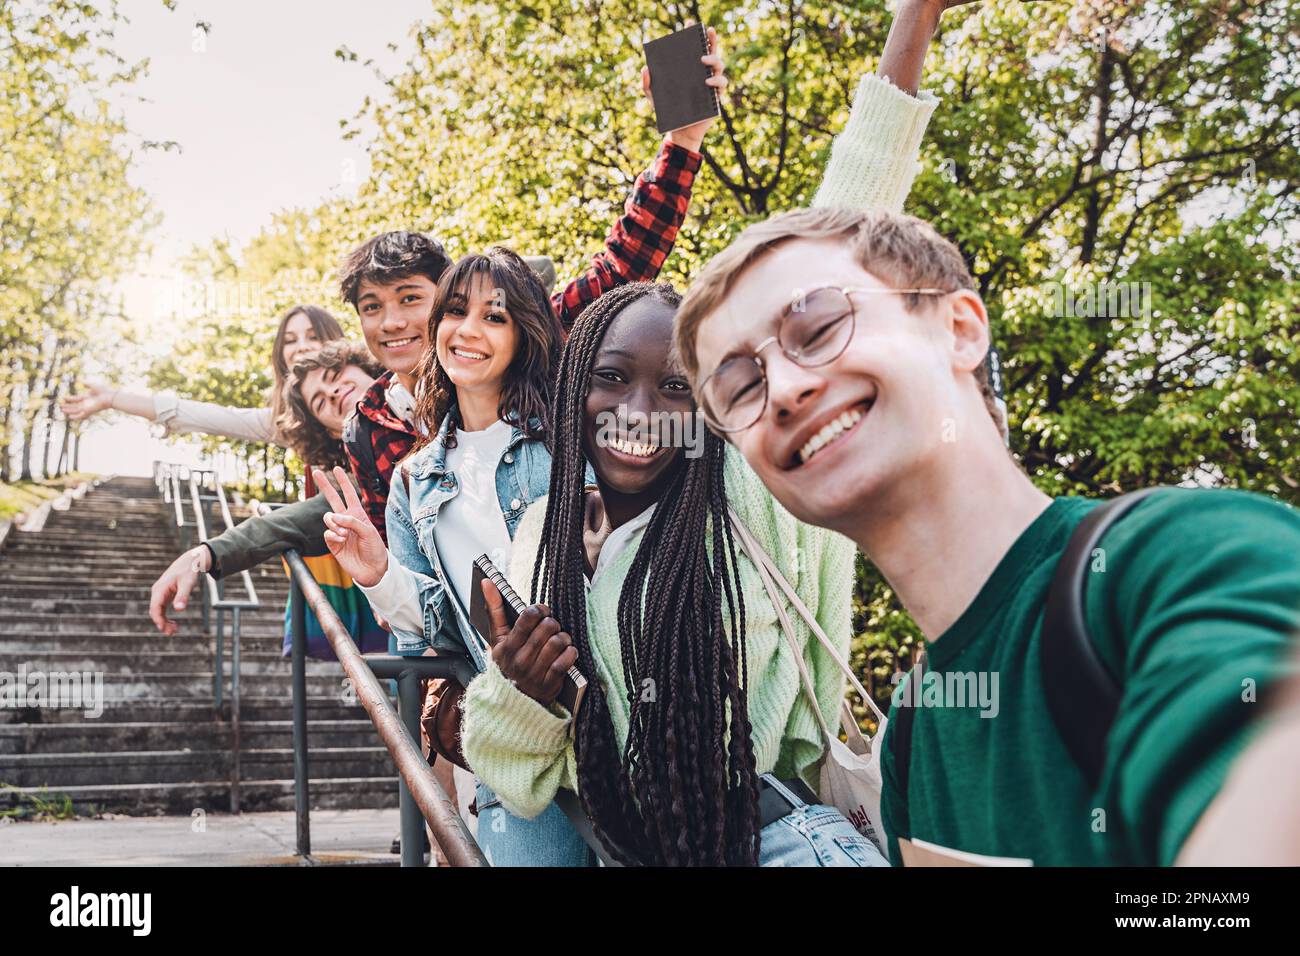 Eine vielfältige Gruppe von Freunden der Generation Z, darunter eine Engländerin, Italiener, eine Filipino und ein afrikanisches Mädchen mit Dreadlocks, die glücklich zusammen für ein Selfie posieren Stockfoto